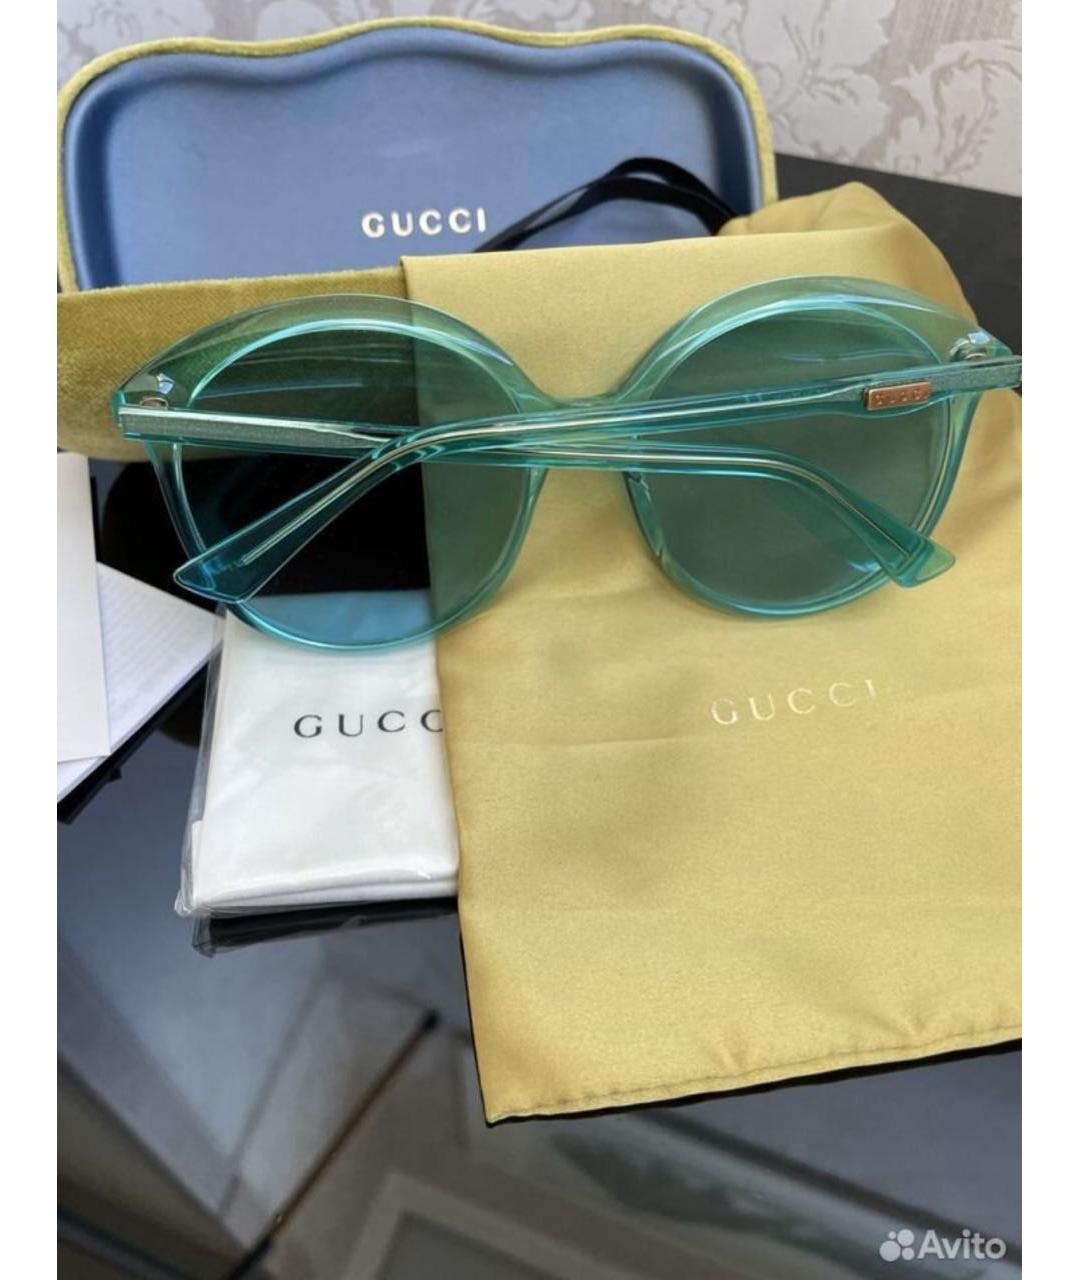 GUCCI Бирюзовые пластиковые солнцезащитные очки, фото 2